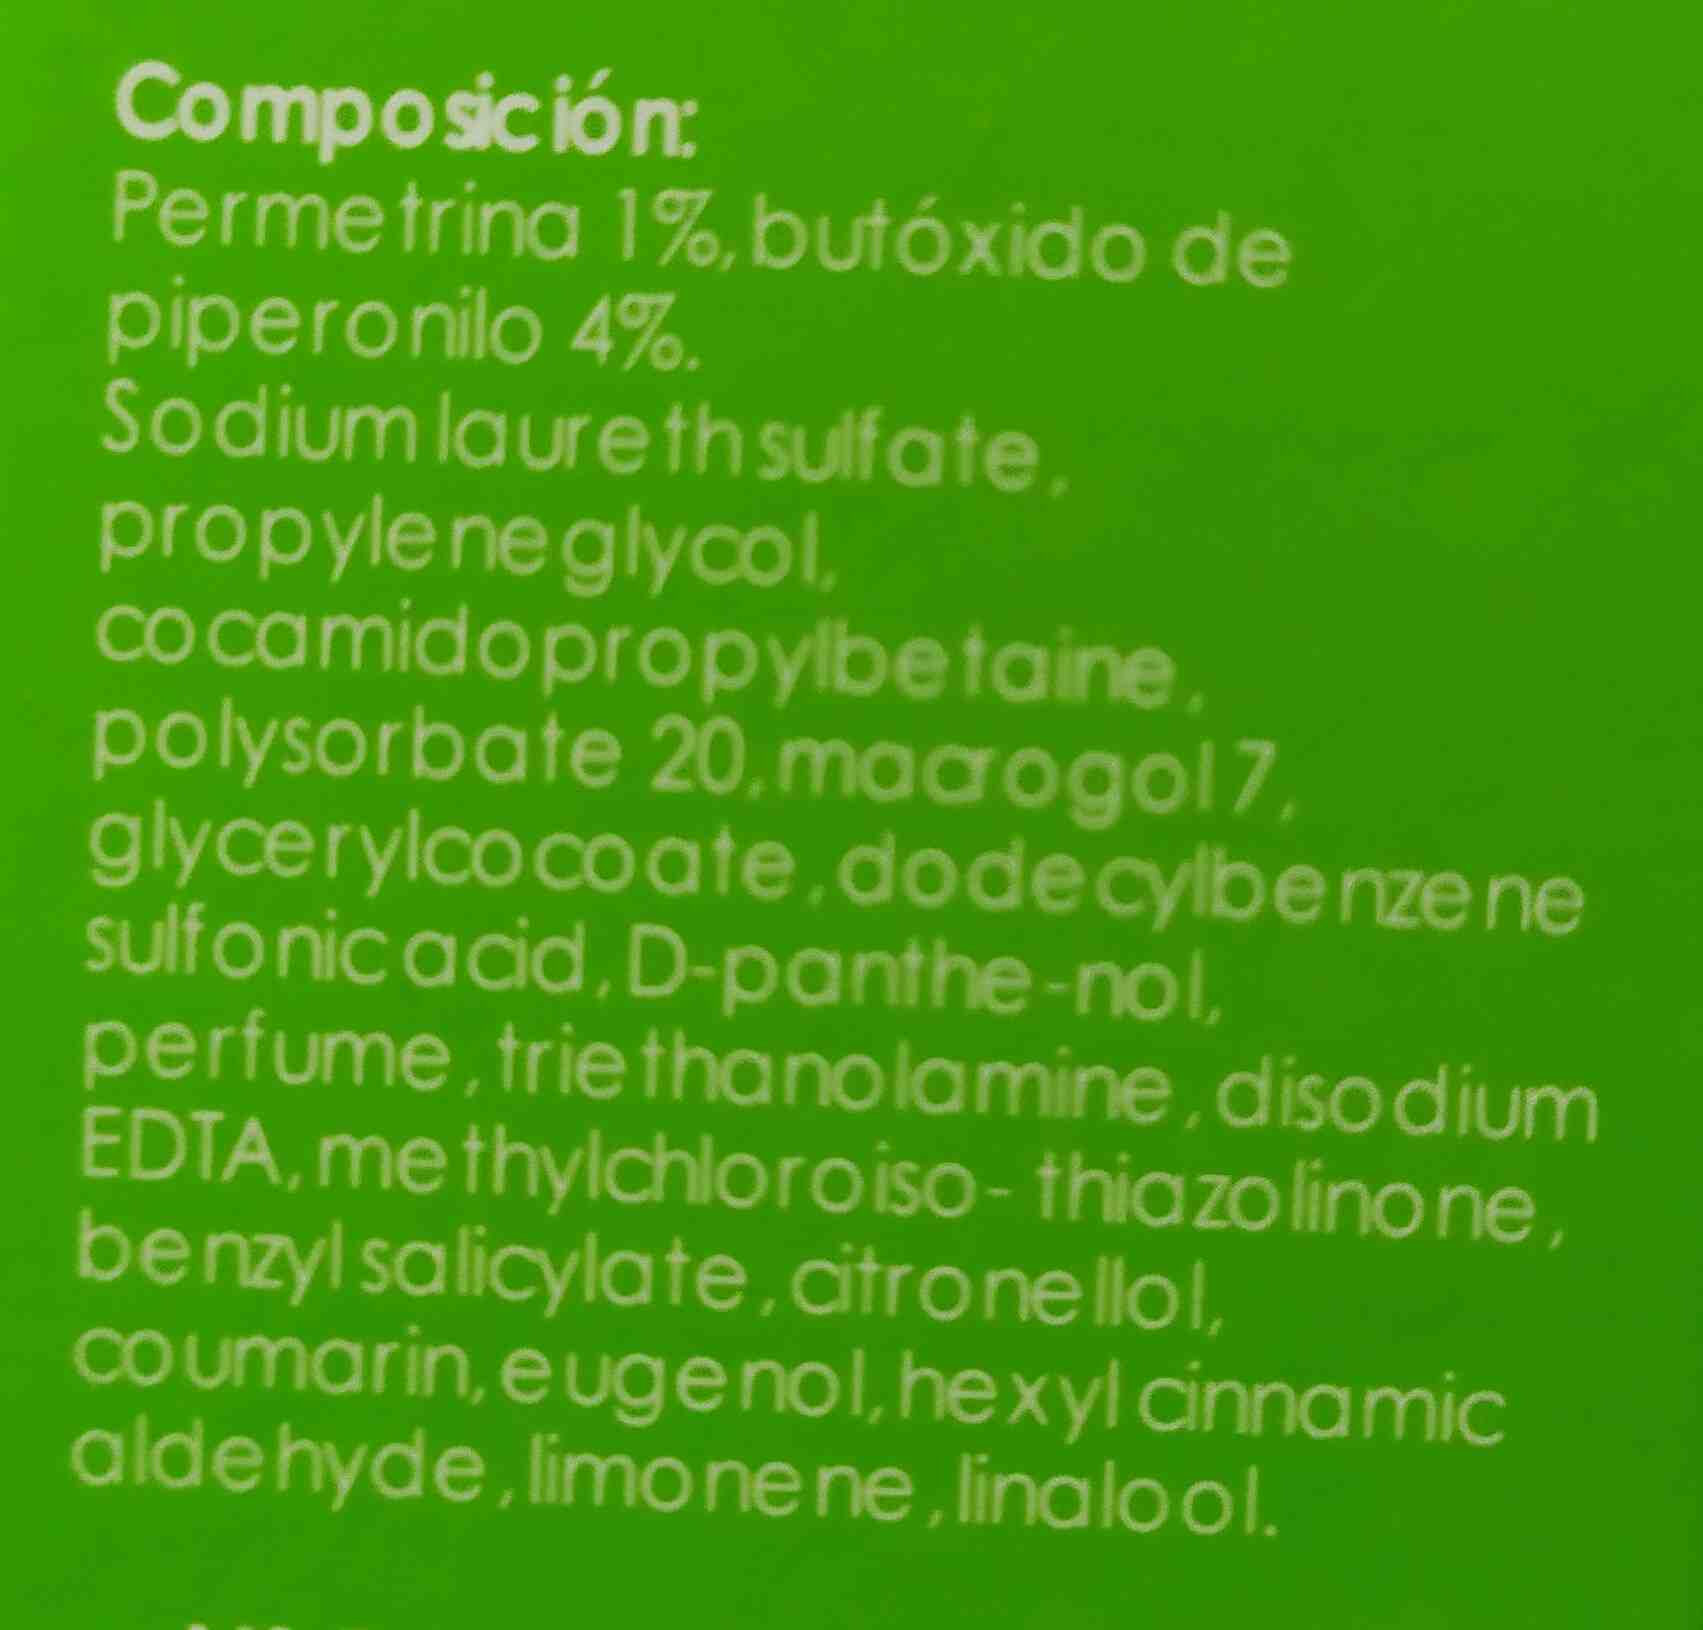 antipiojos - Ingredients - en